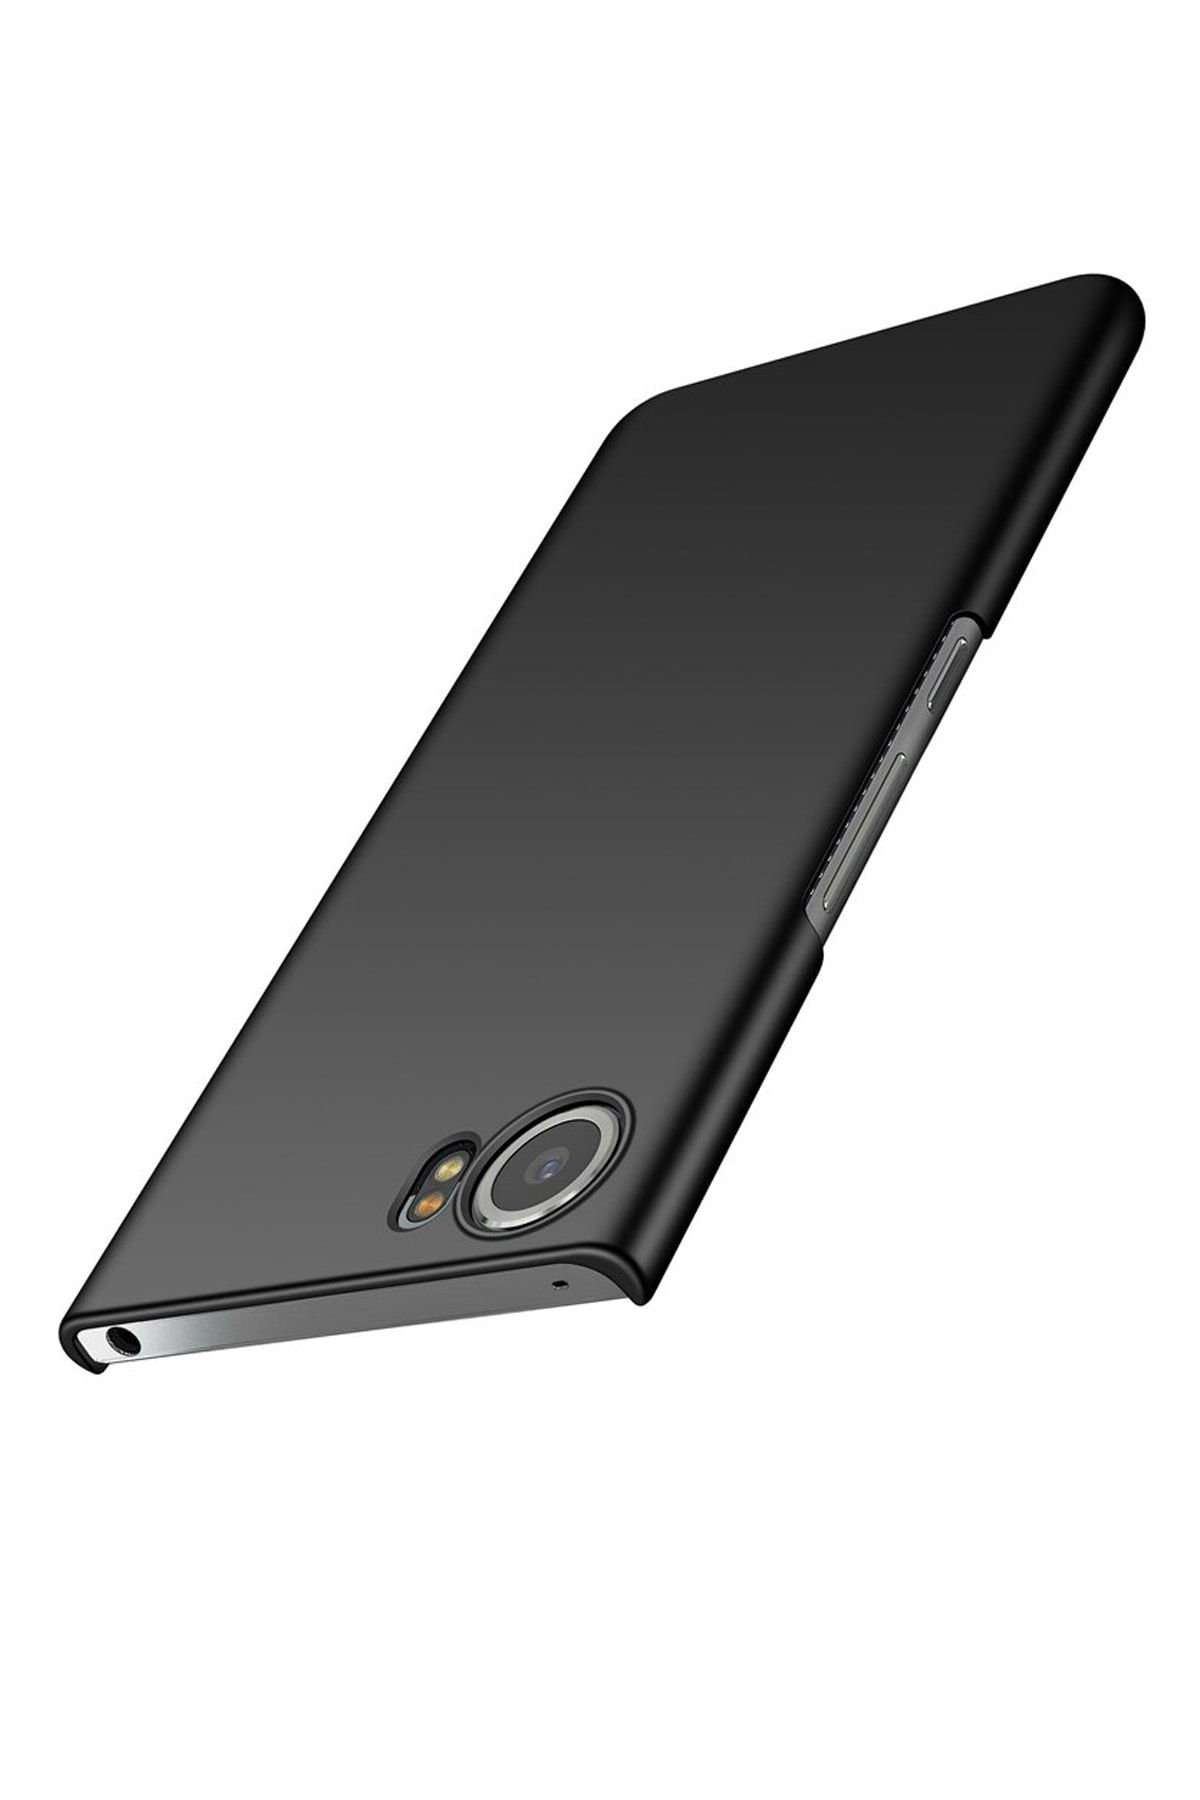 Microcase Blackberry Keyone Slim Sert Rubber Kılıf - Siyah